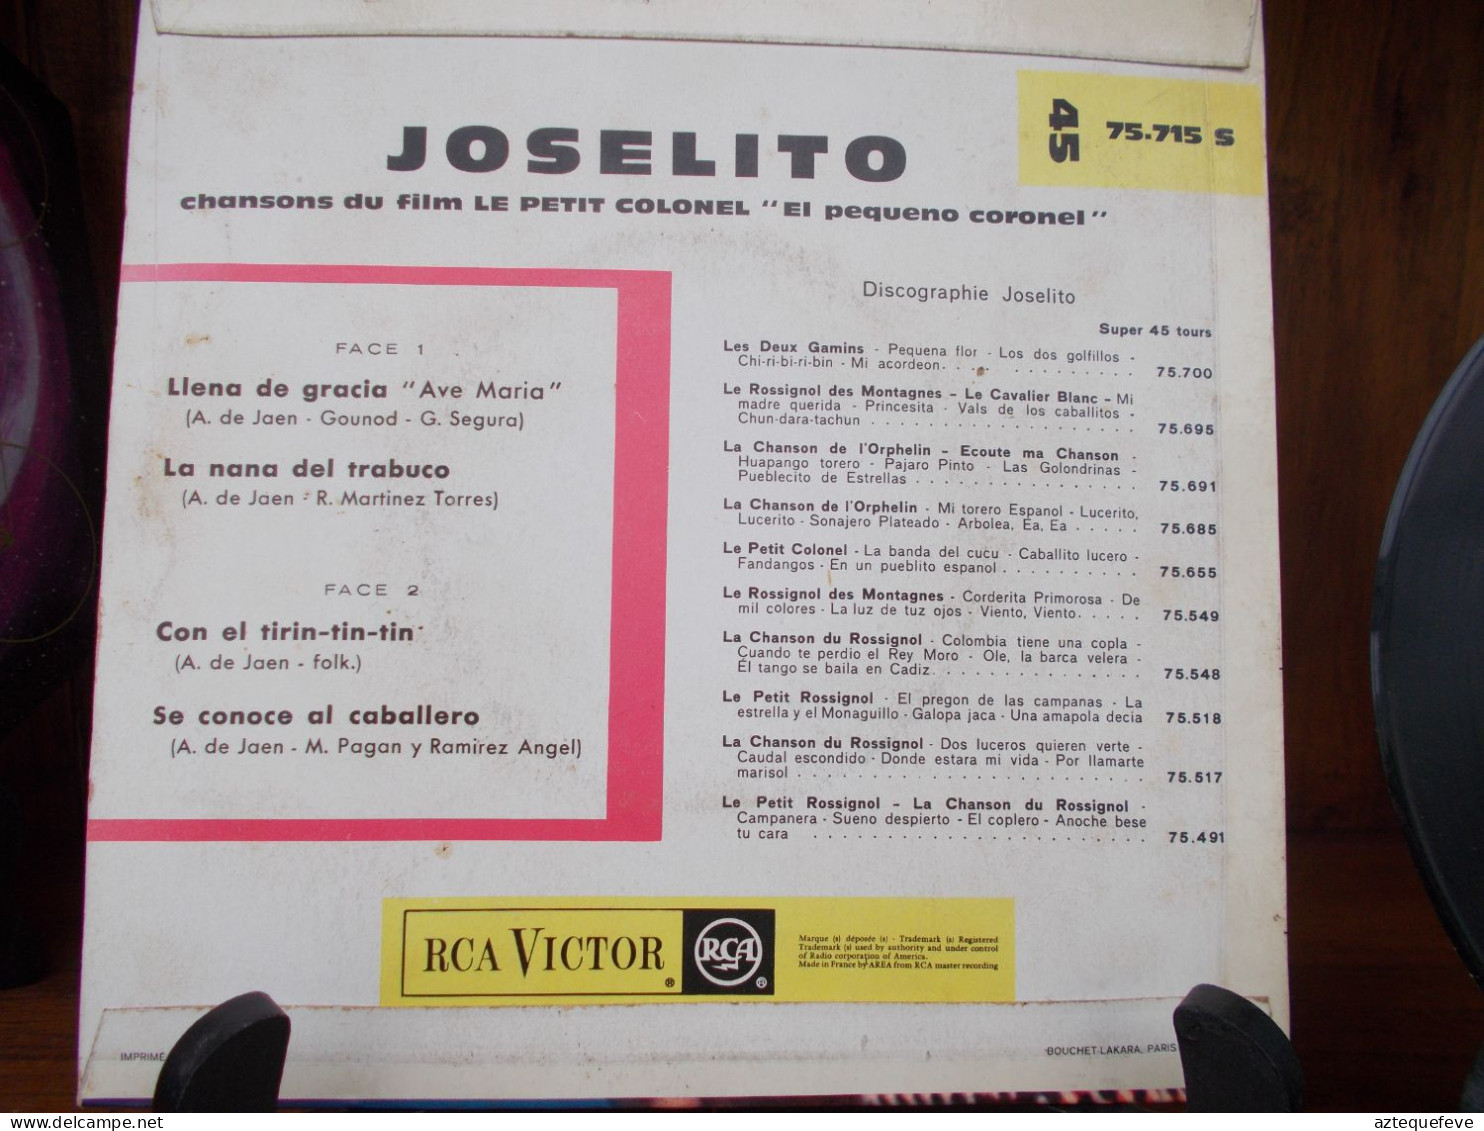 JOSELITO RCA VICTOR "LE PETIT COLONEL" Etc.. 45 T 75.715 S - Special Formats